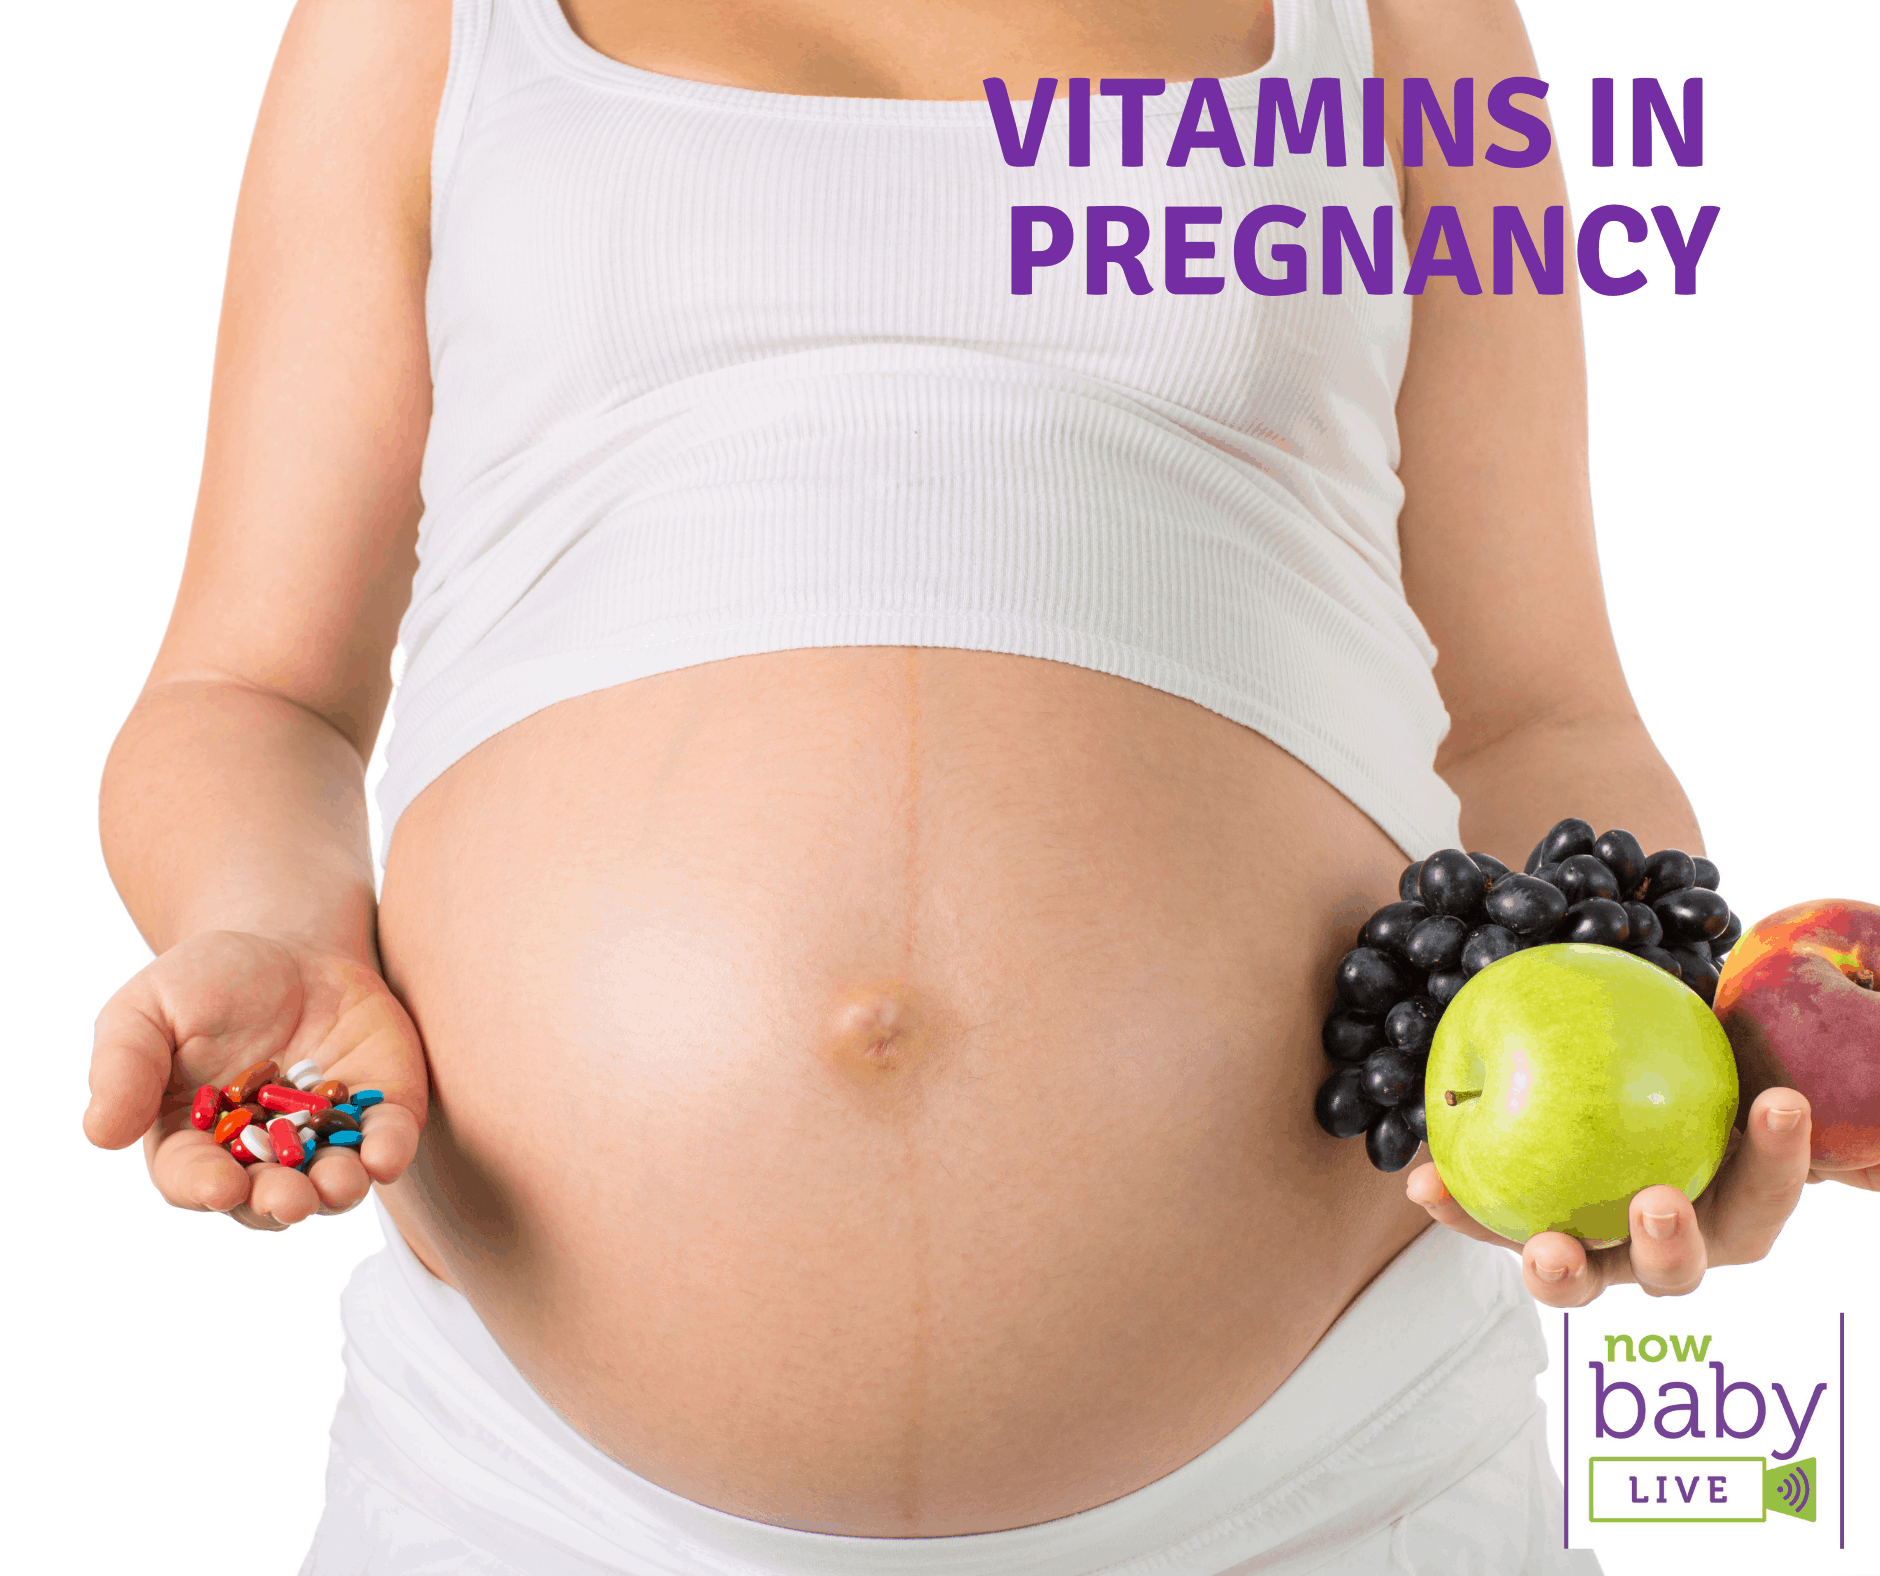 I’m pregnant ….what vitamins should I take?